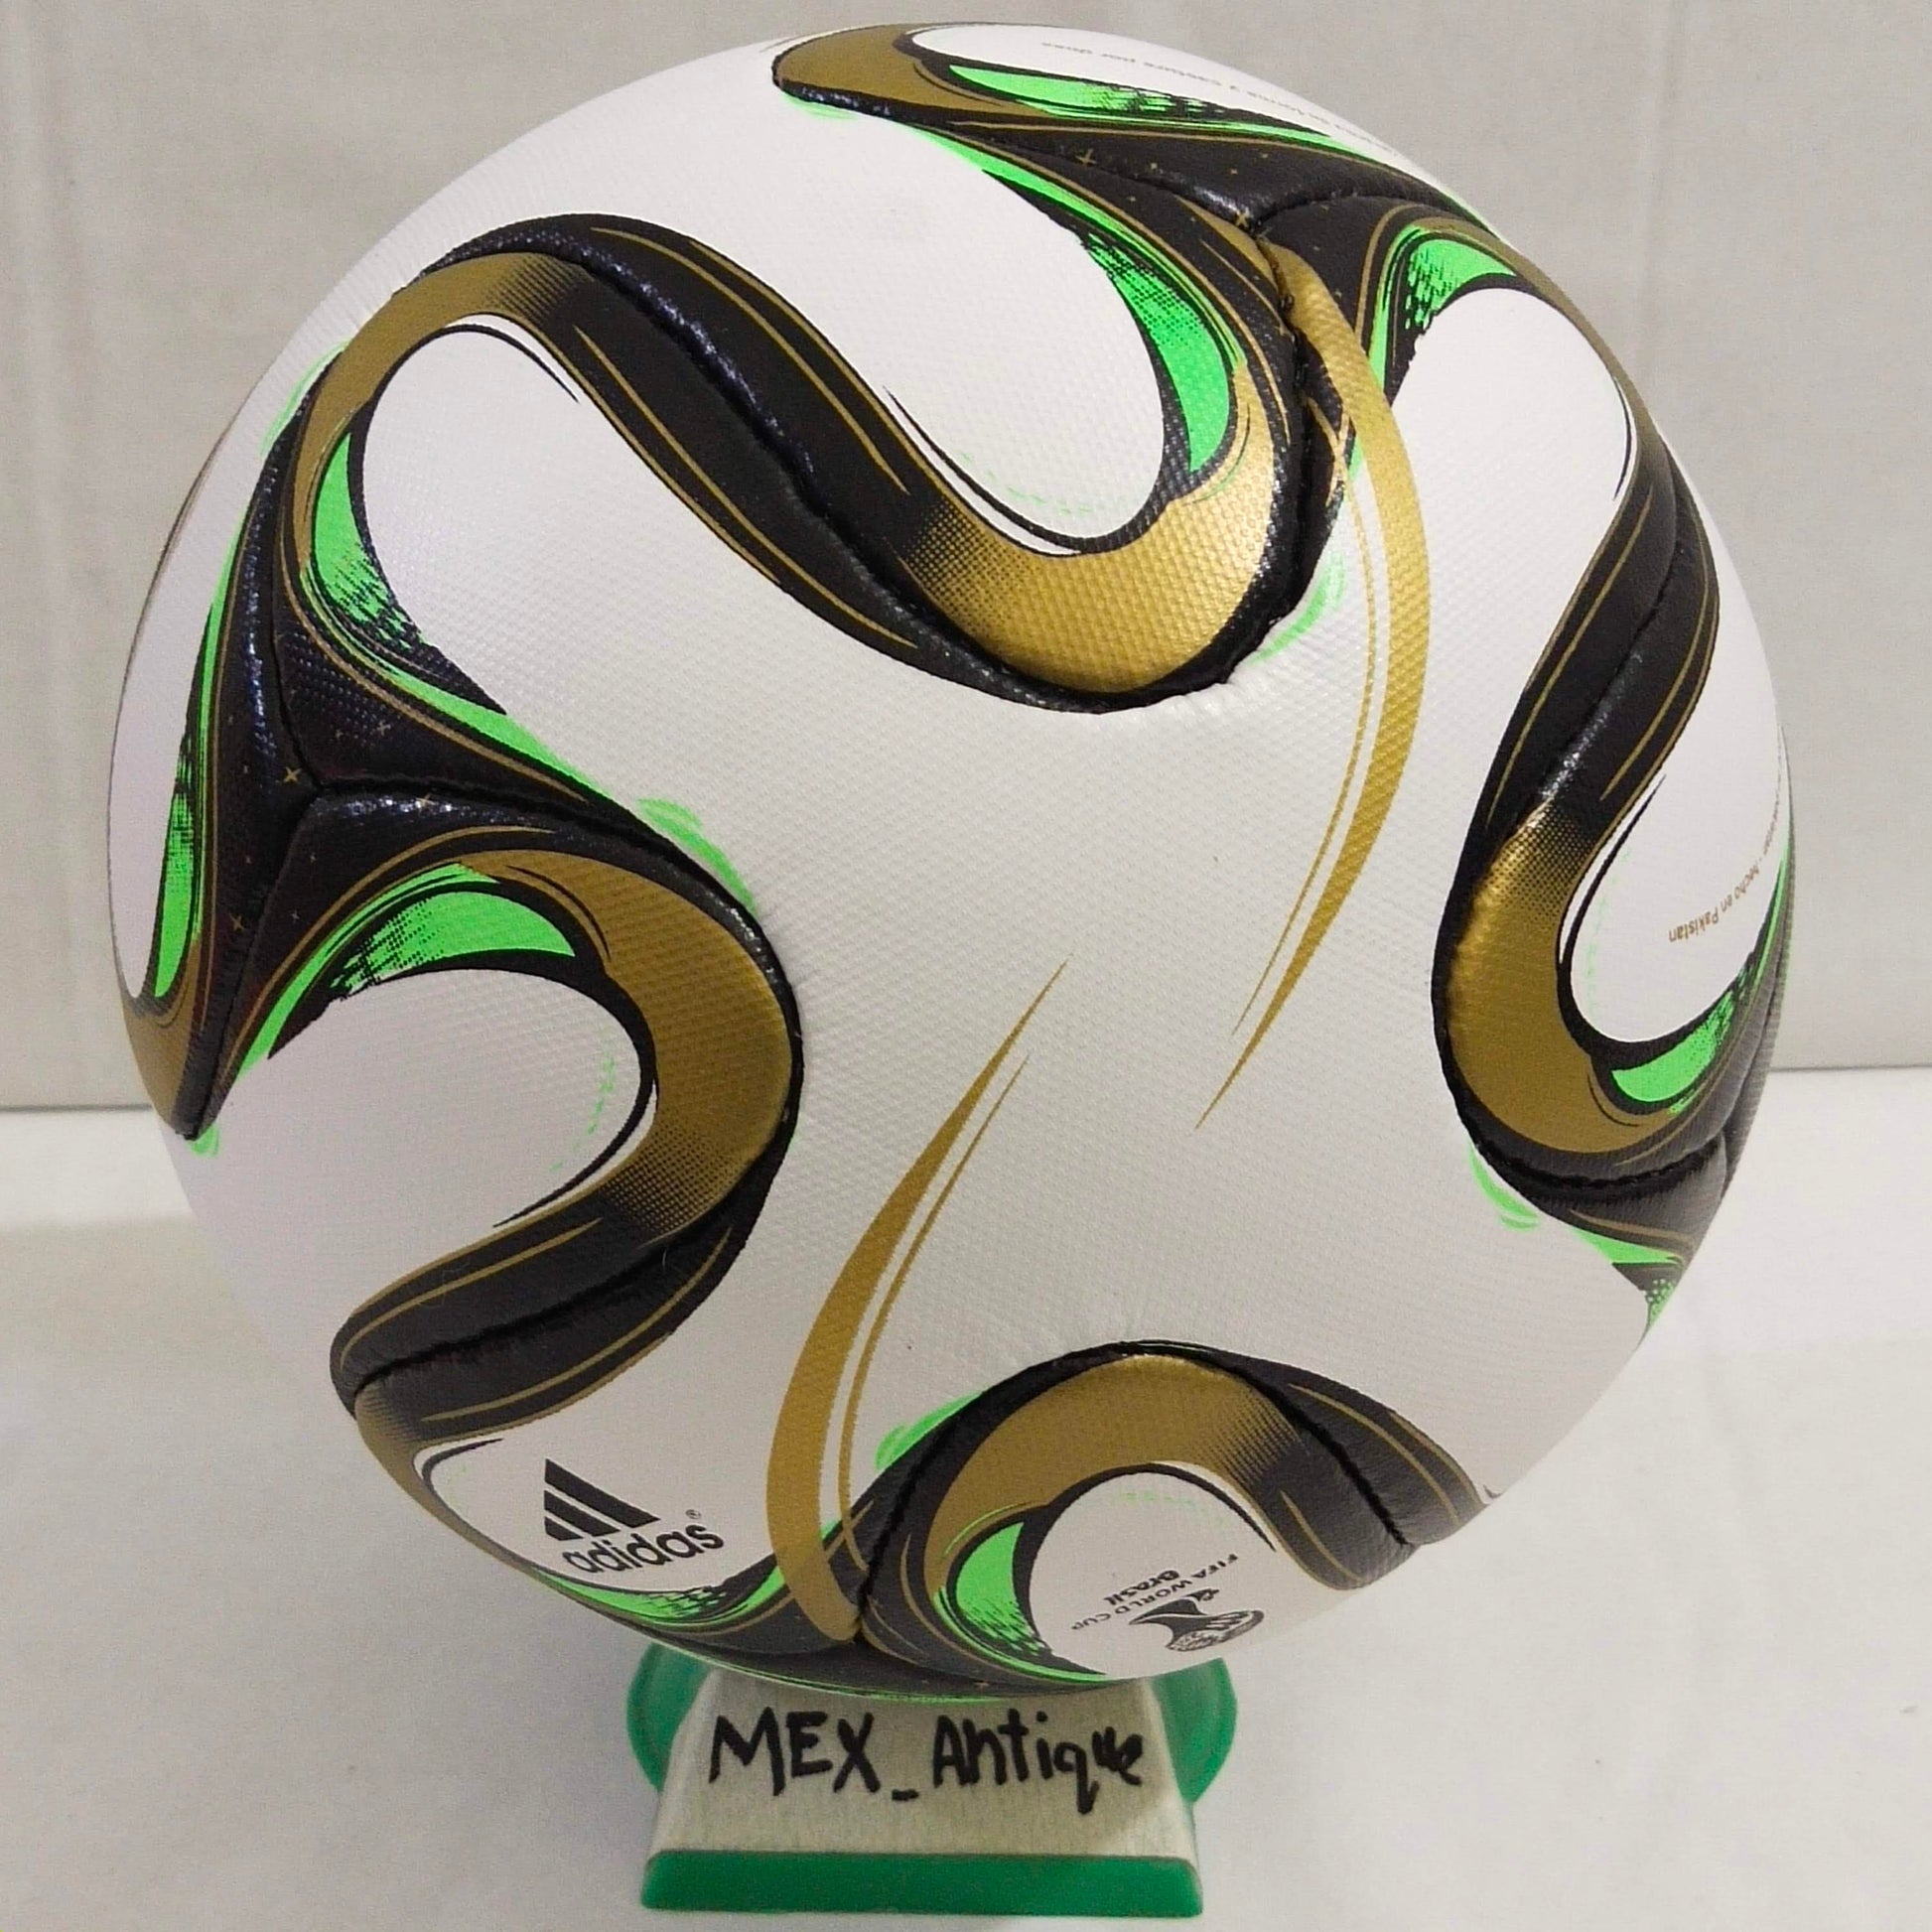 Adidas Brazuca Rio | Final Ball | 2014 | FIFA World Cup Ball | SIZE 5 06